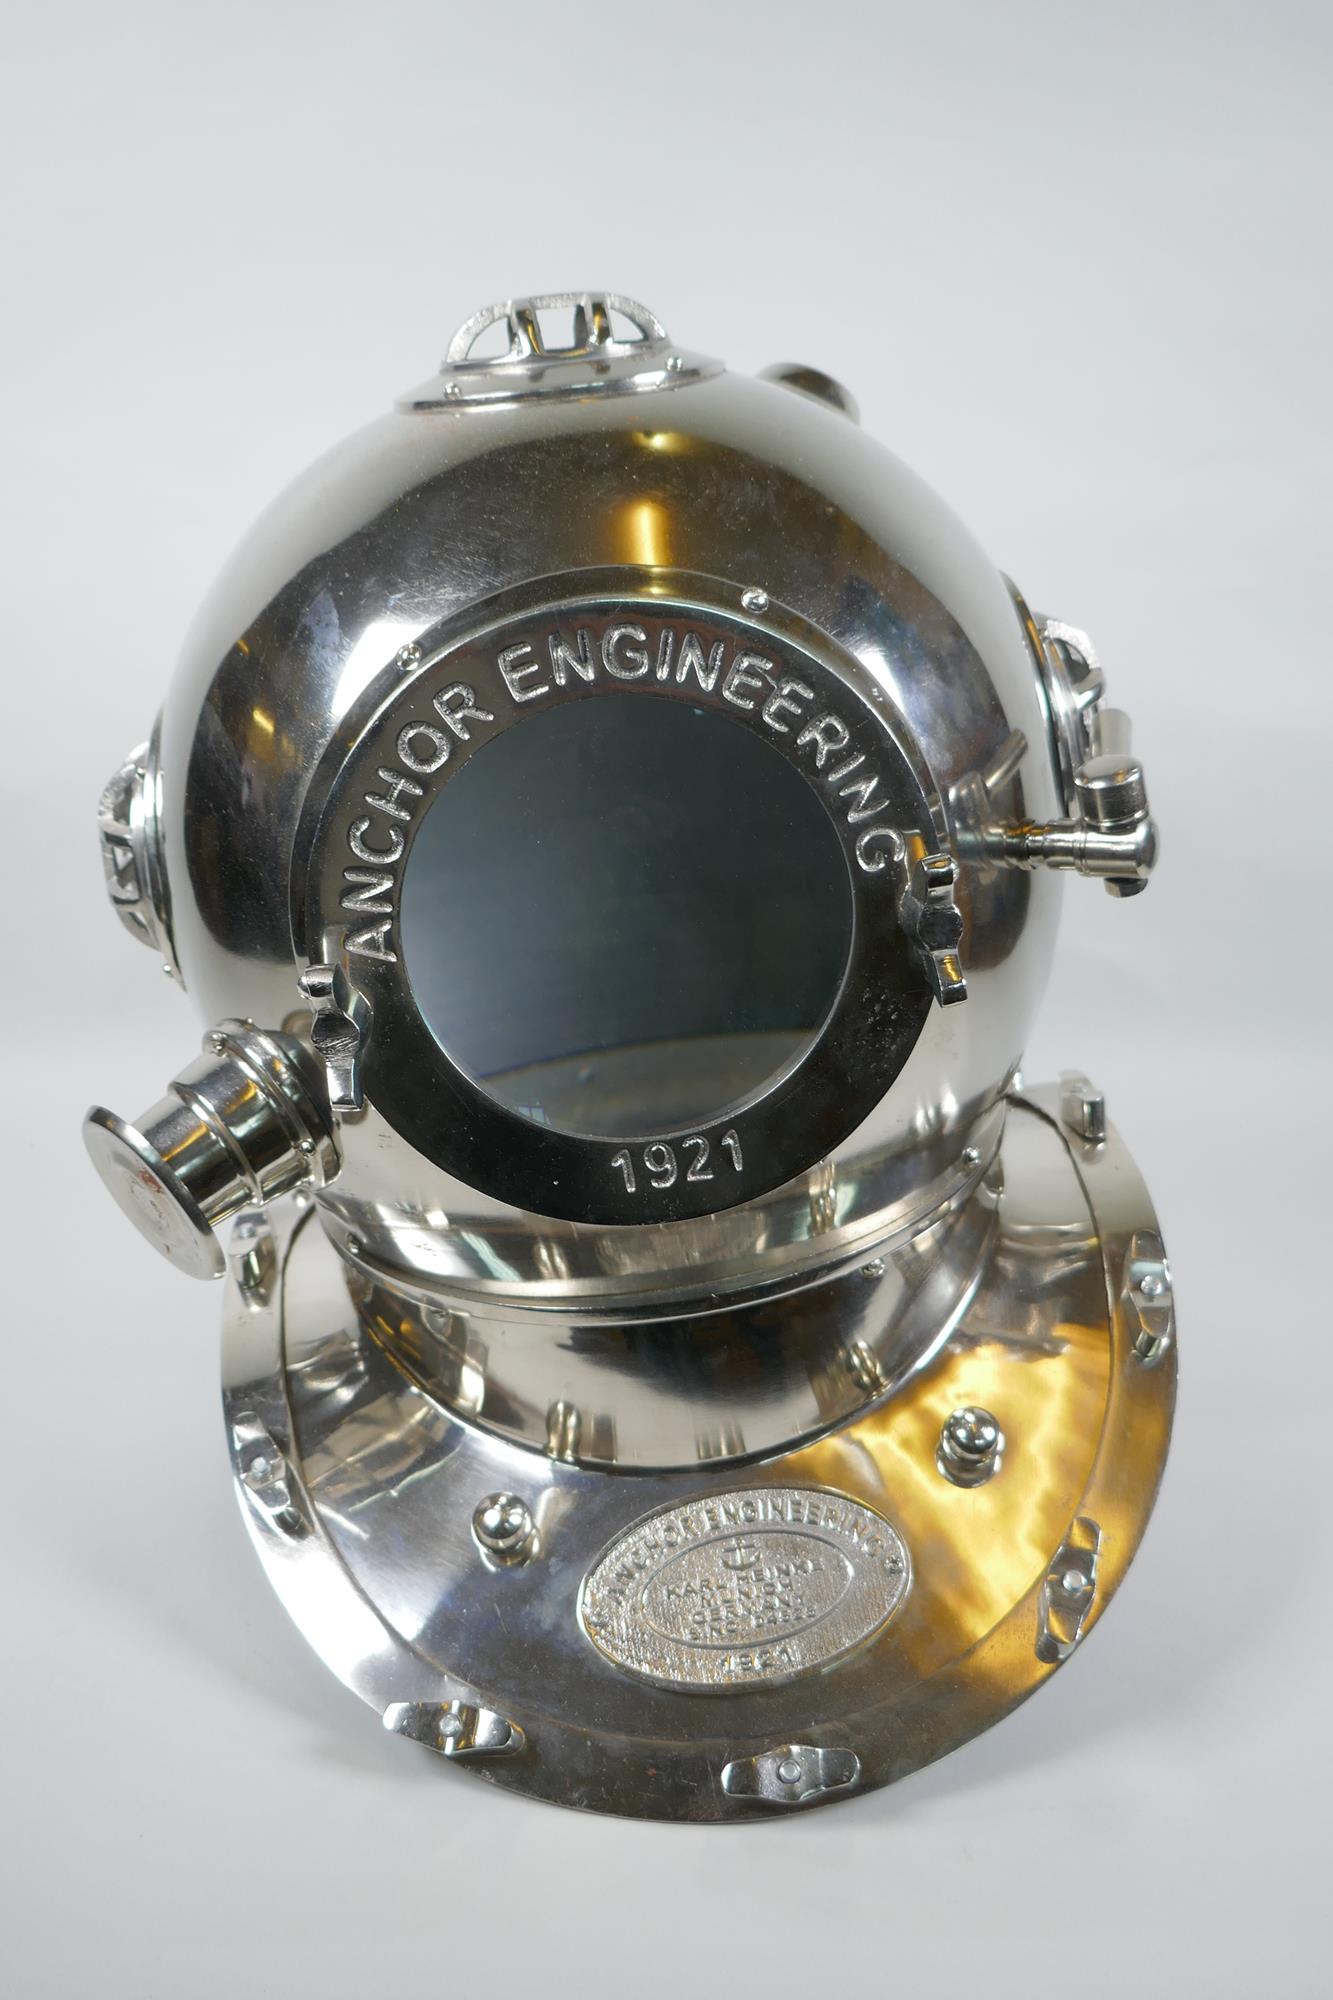 A vintage style chromed metal diver's helmet, 49cm high - Image 2 of 2